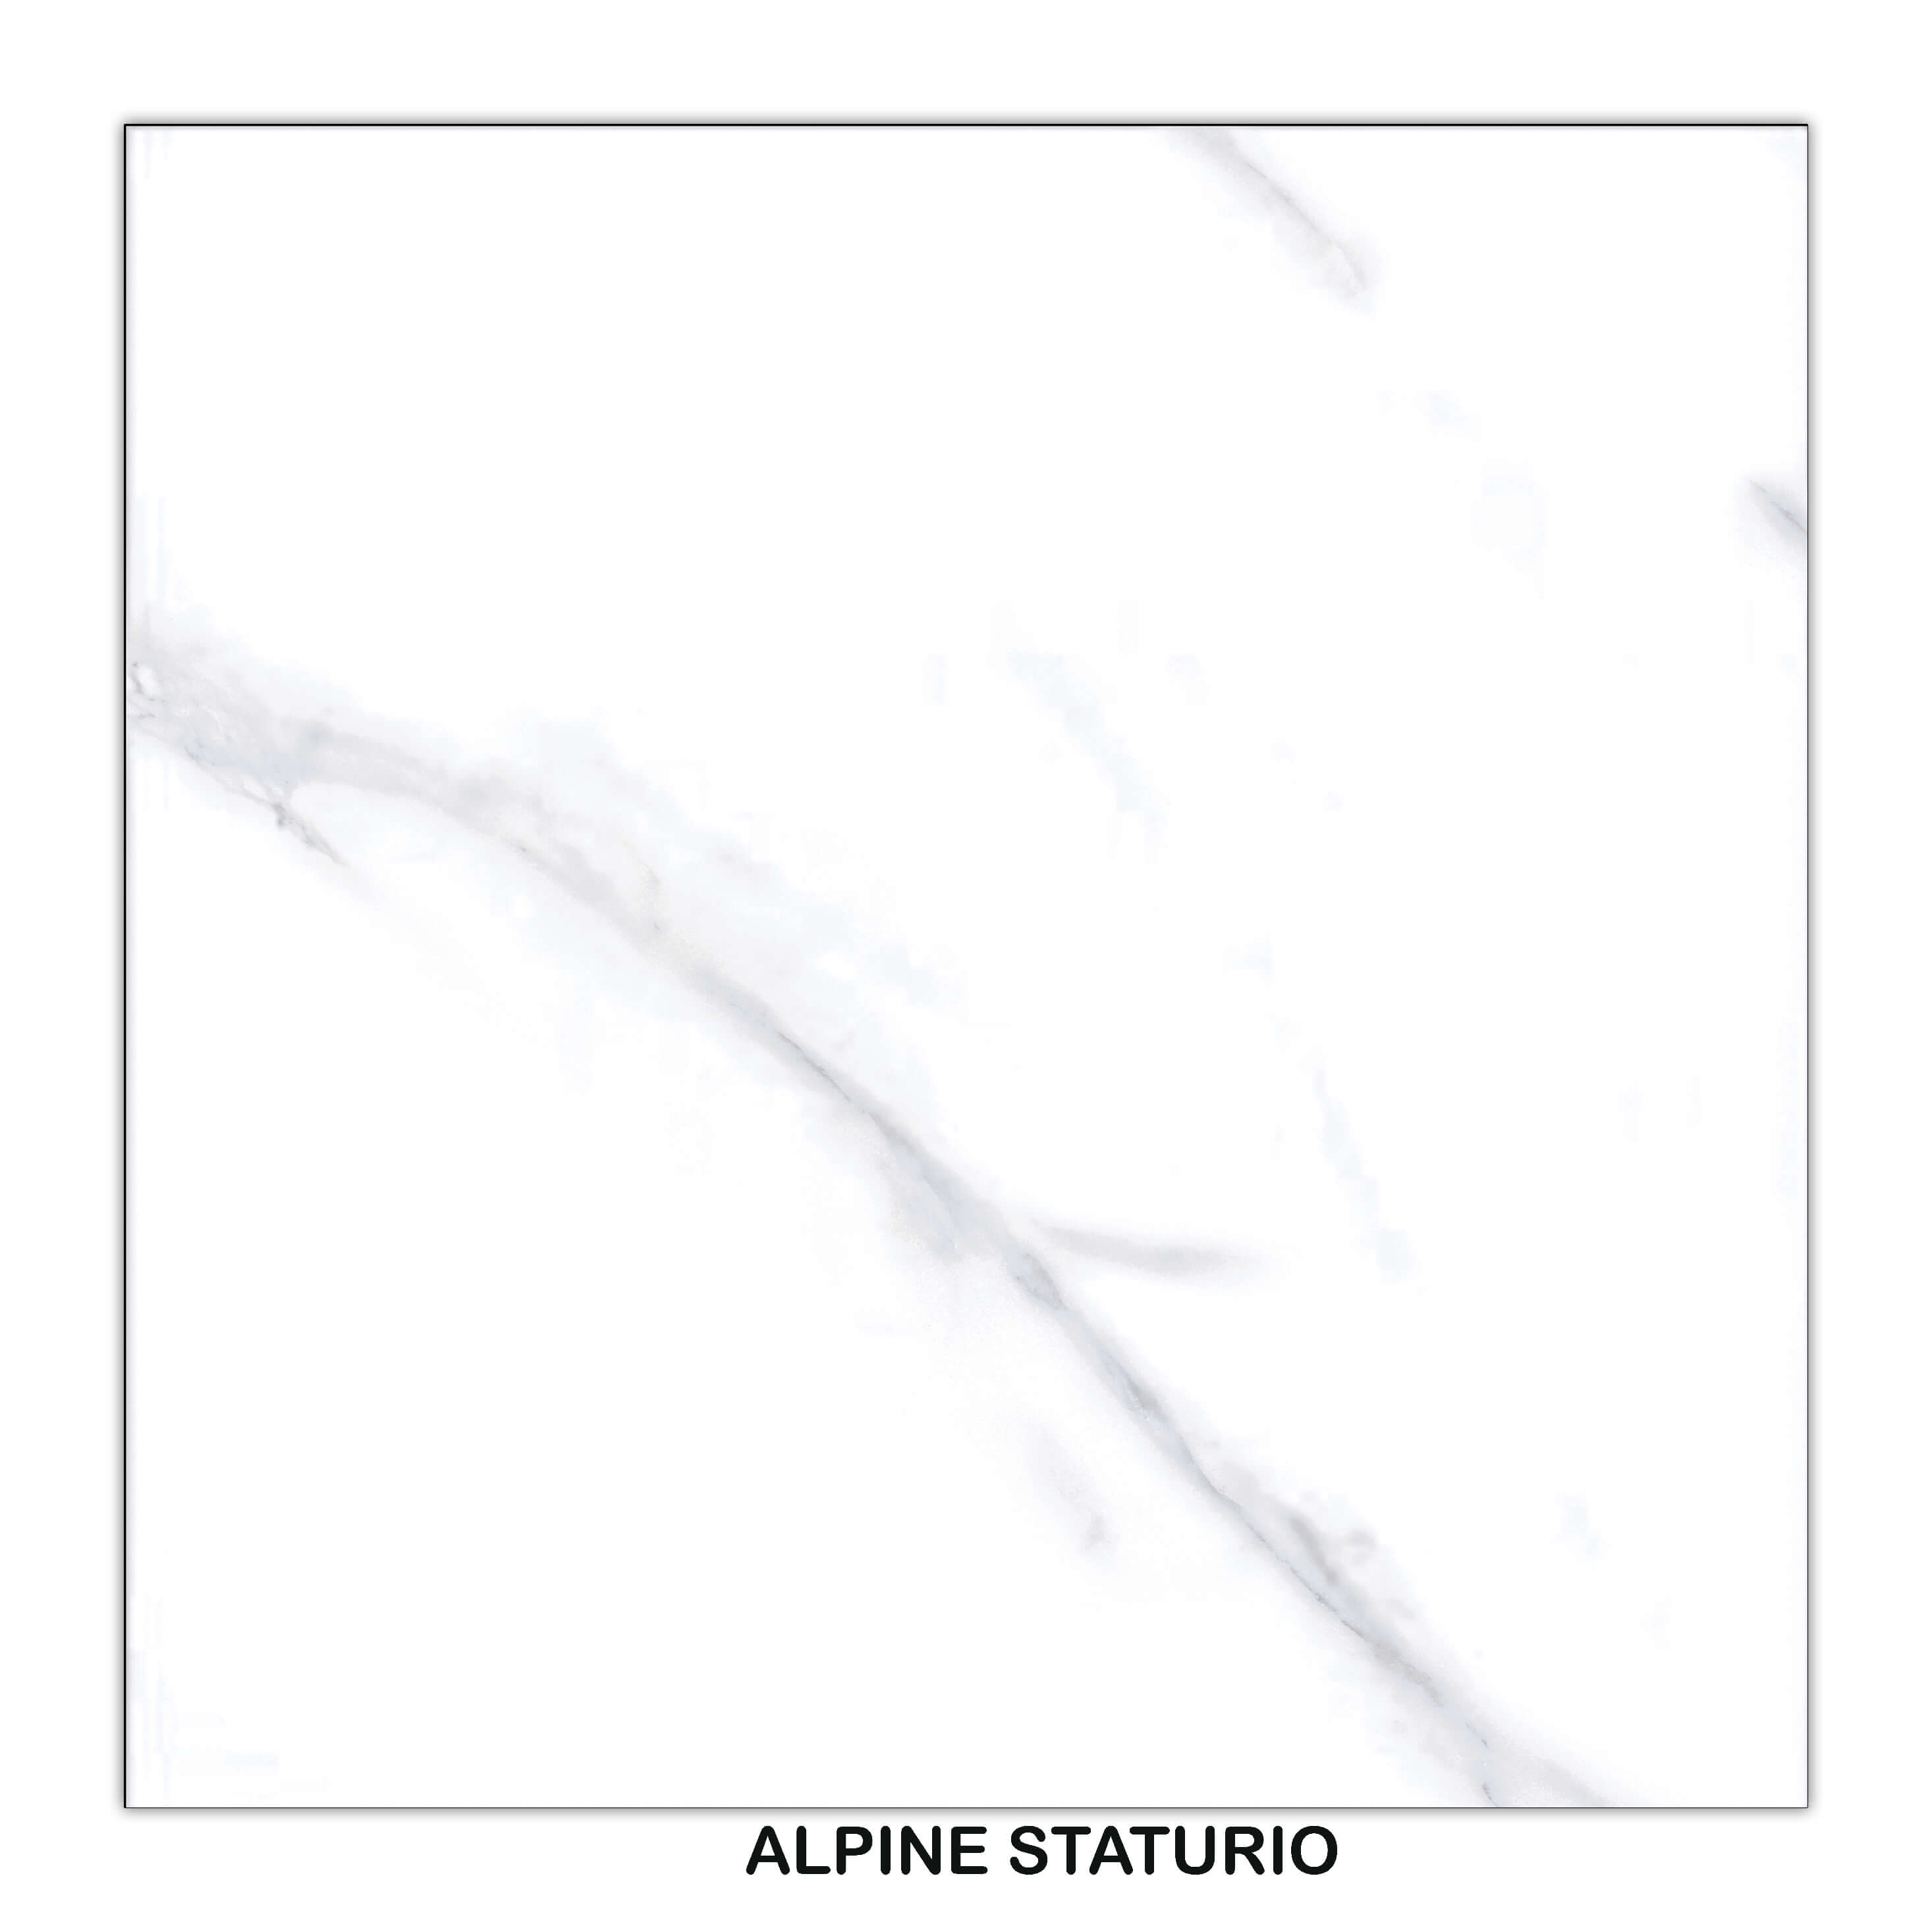 ALPINE STATURIO